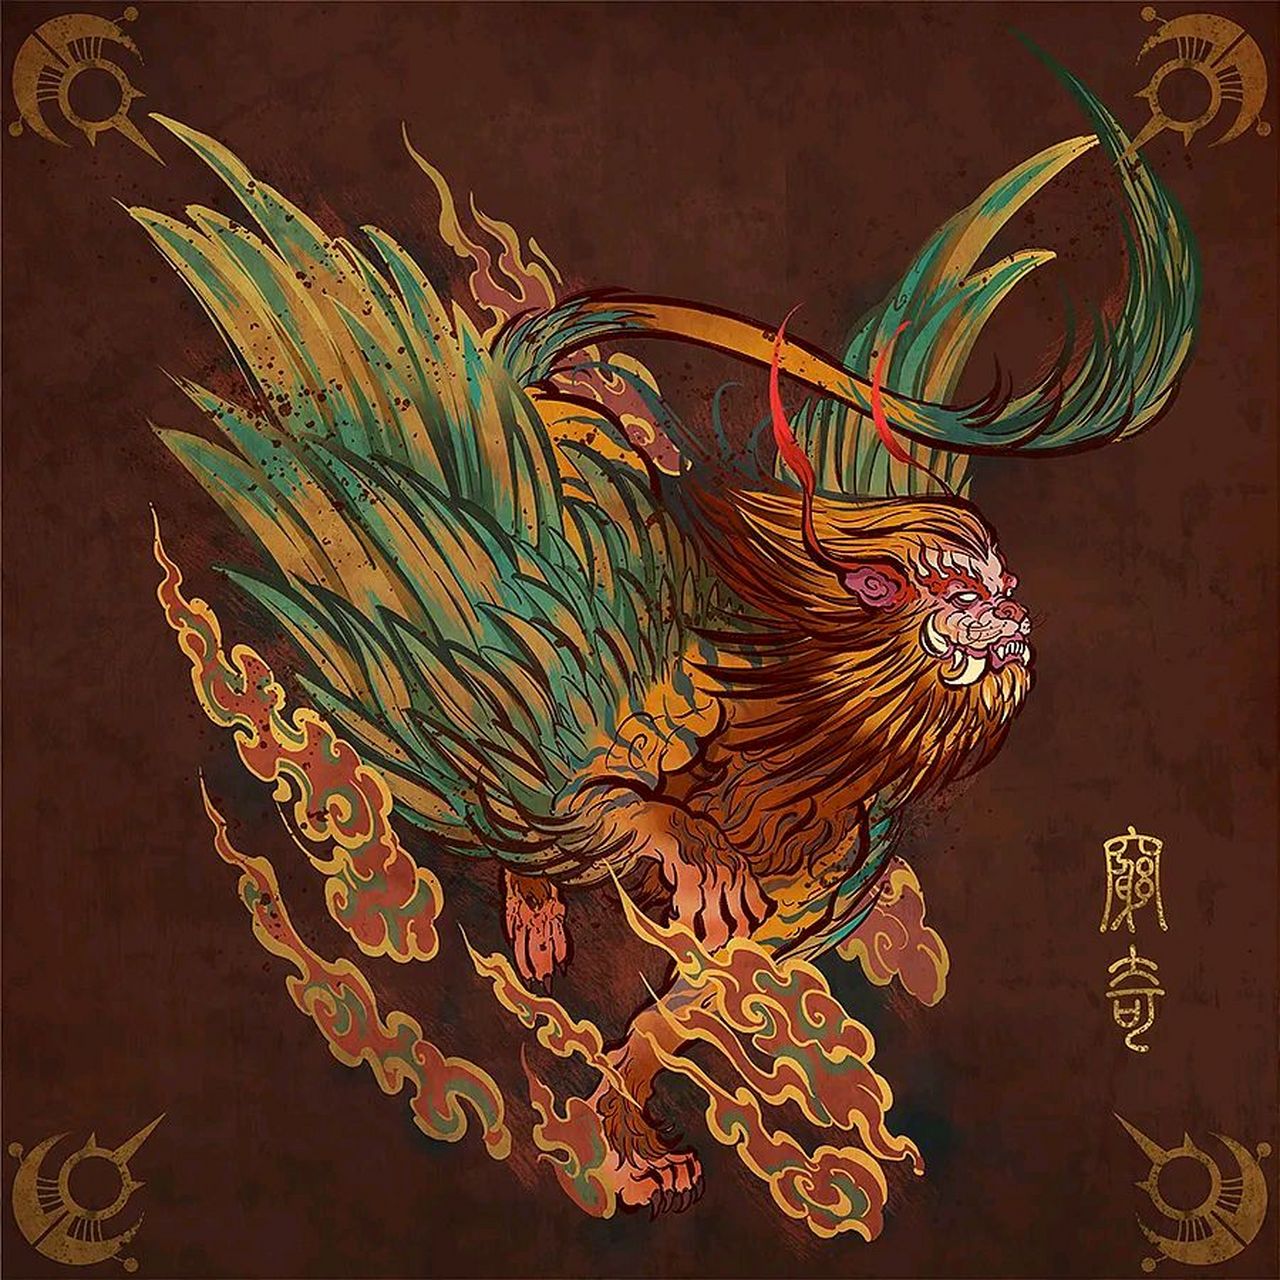 穷奇 上古异兽之四大凶兽之一,中国传说中抑善扬恶的恶神,它的大小如